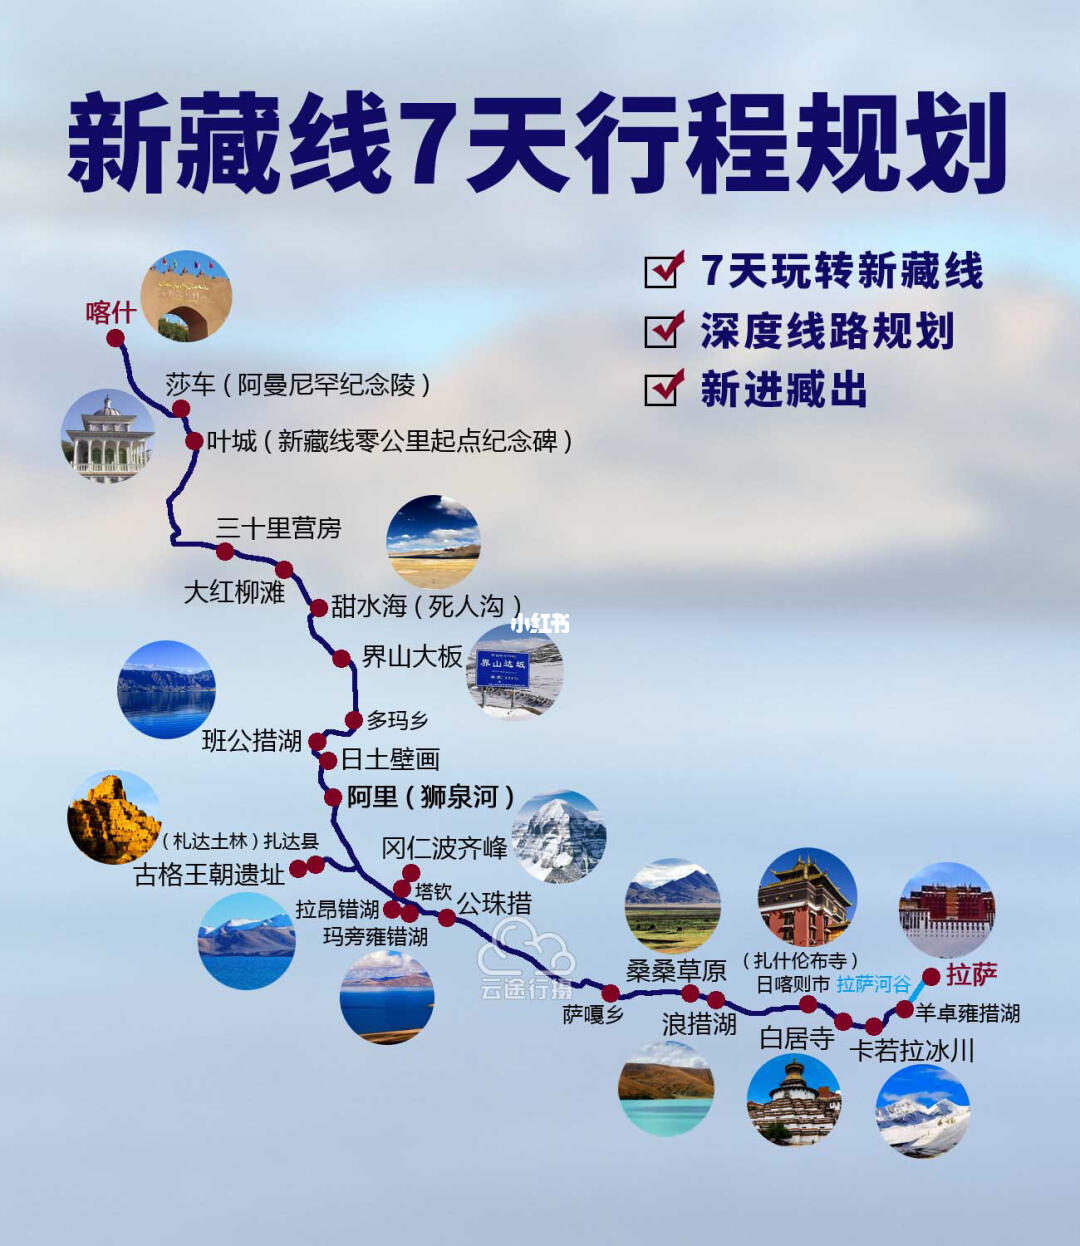 上海汽车南站到湖州的汽车时刻表是怎样的？最